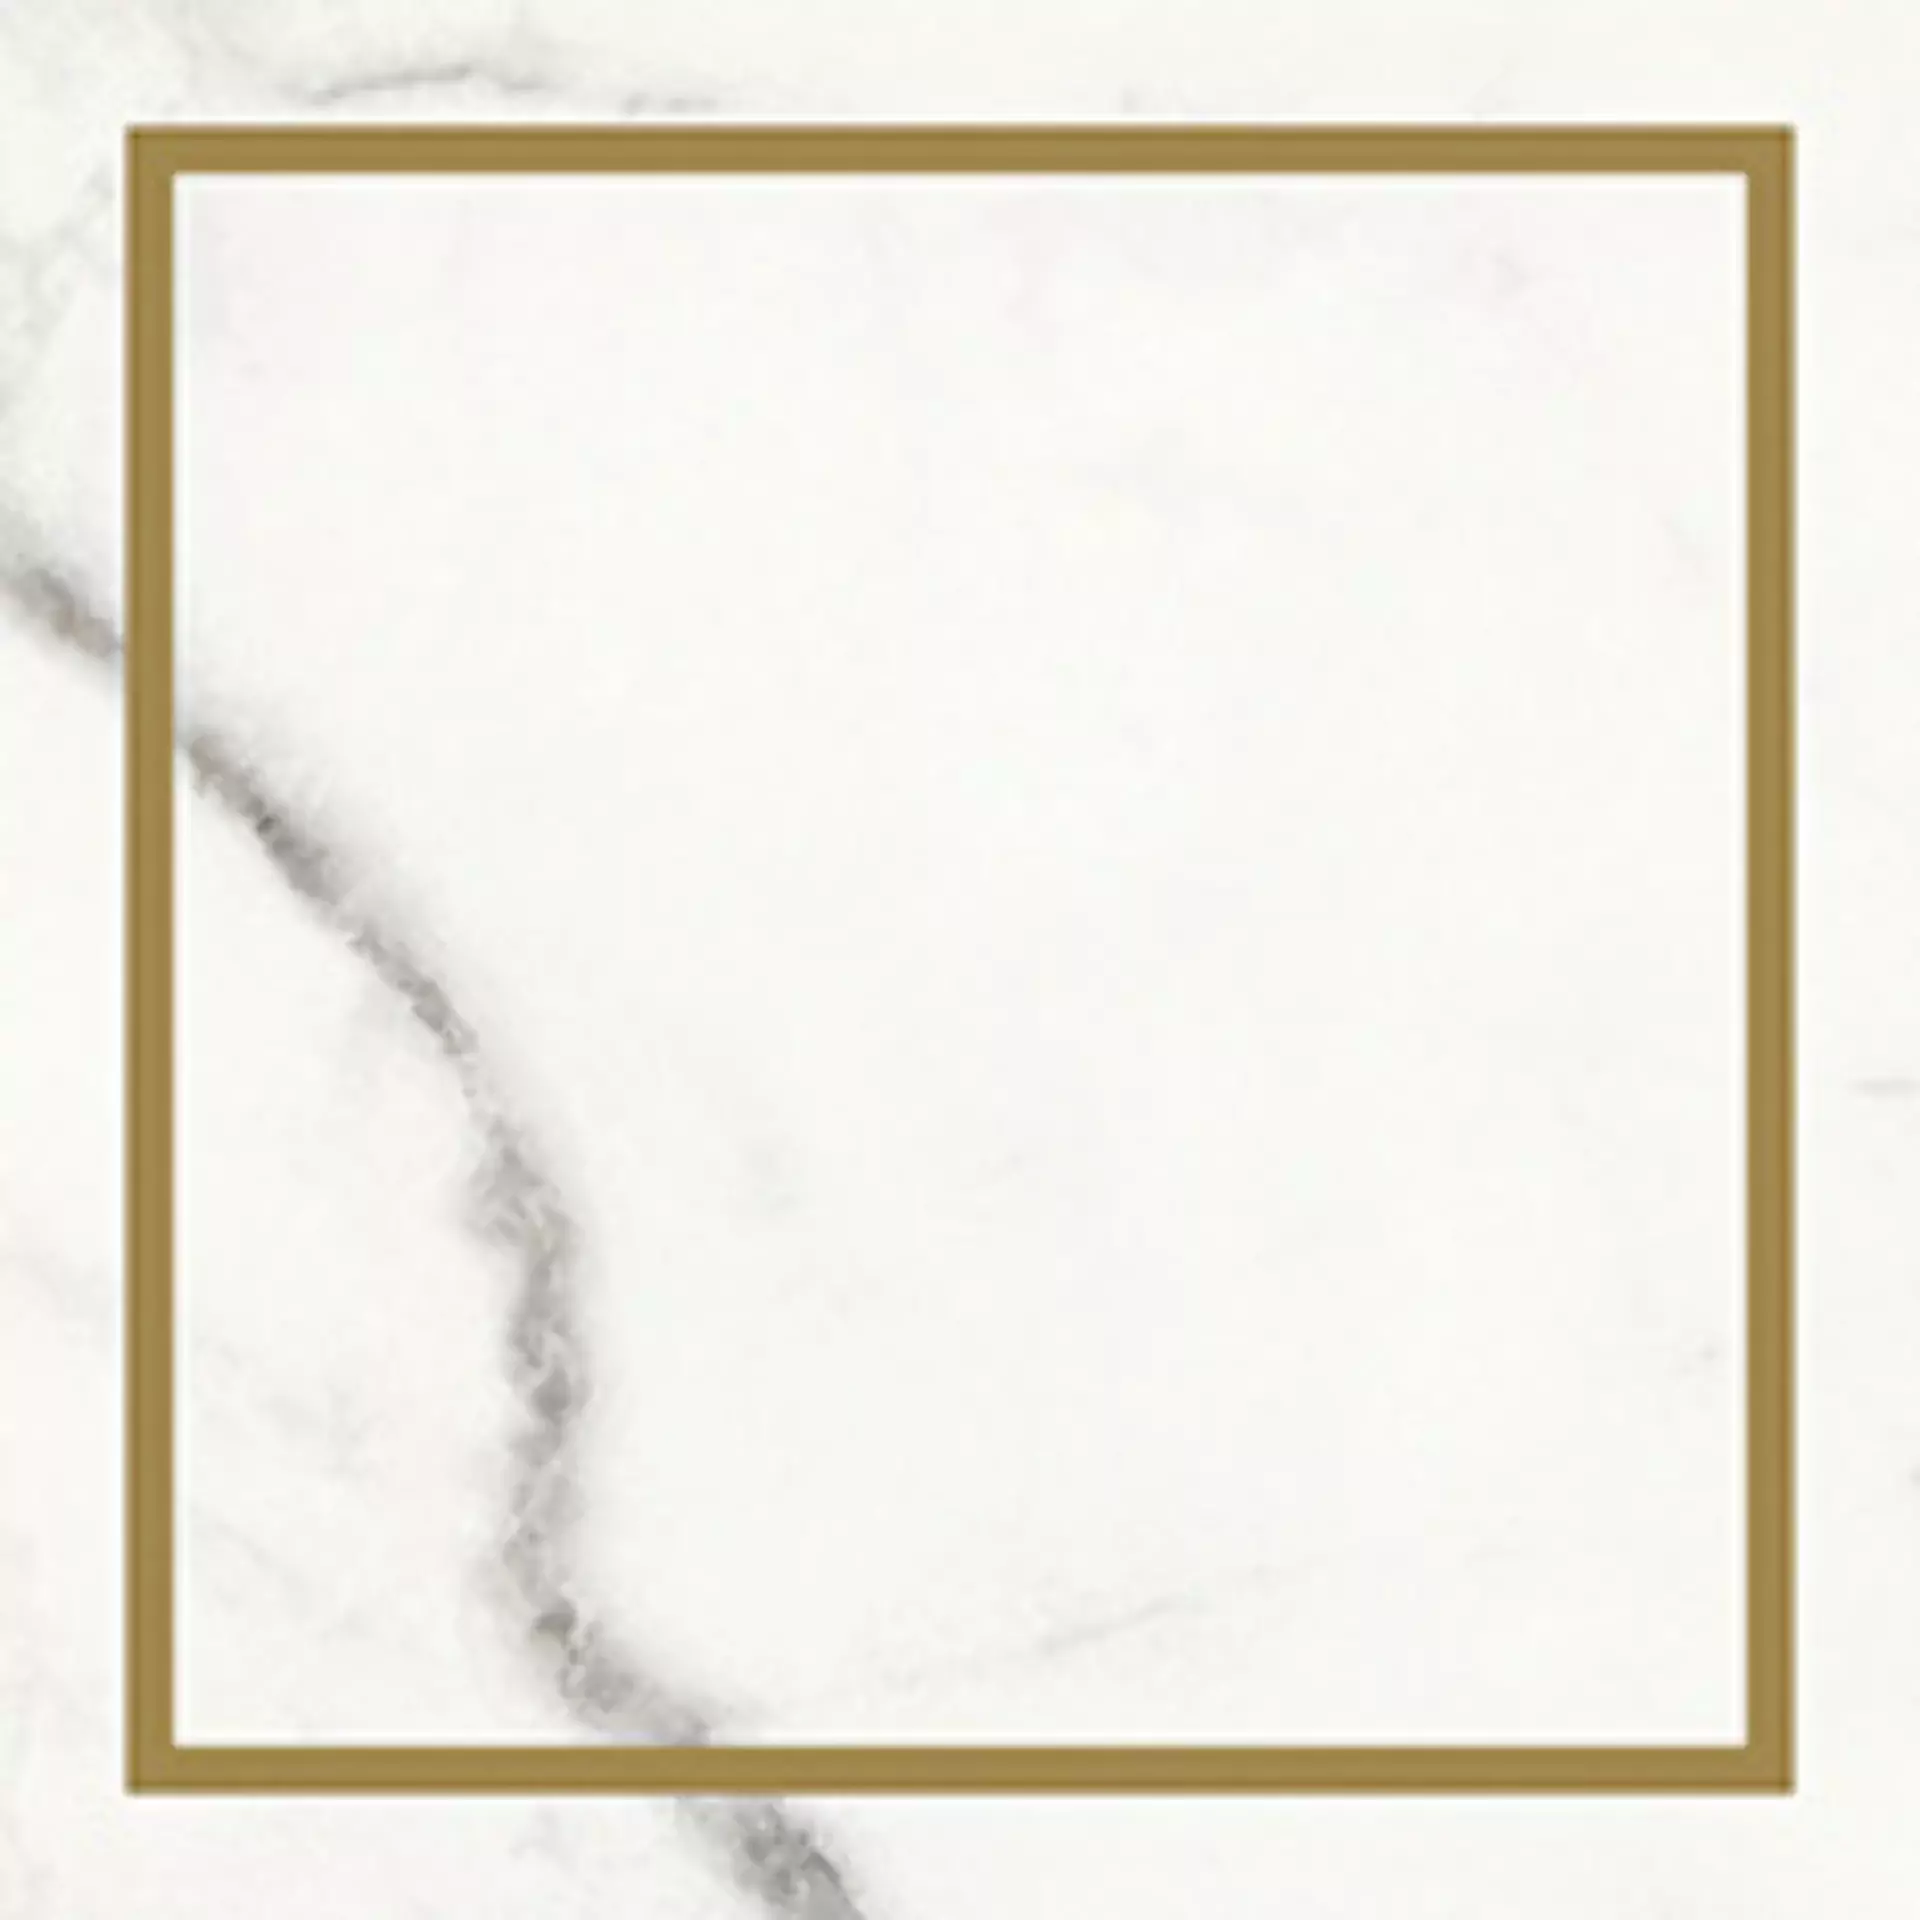 Wandfliese Villeroy & Boch Victorian White - Gold Glossy White - Gold 1222-MK0I glaenzend 20x20cm Dekor Single rektifiziert 10mm